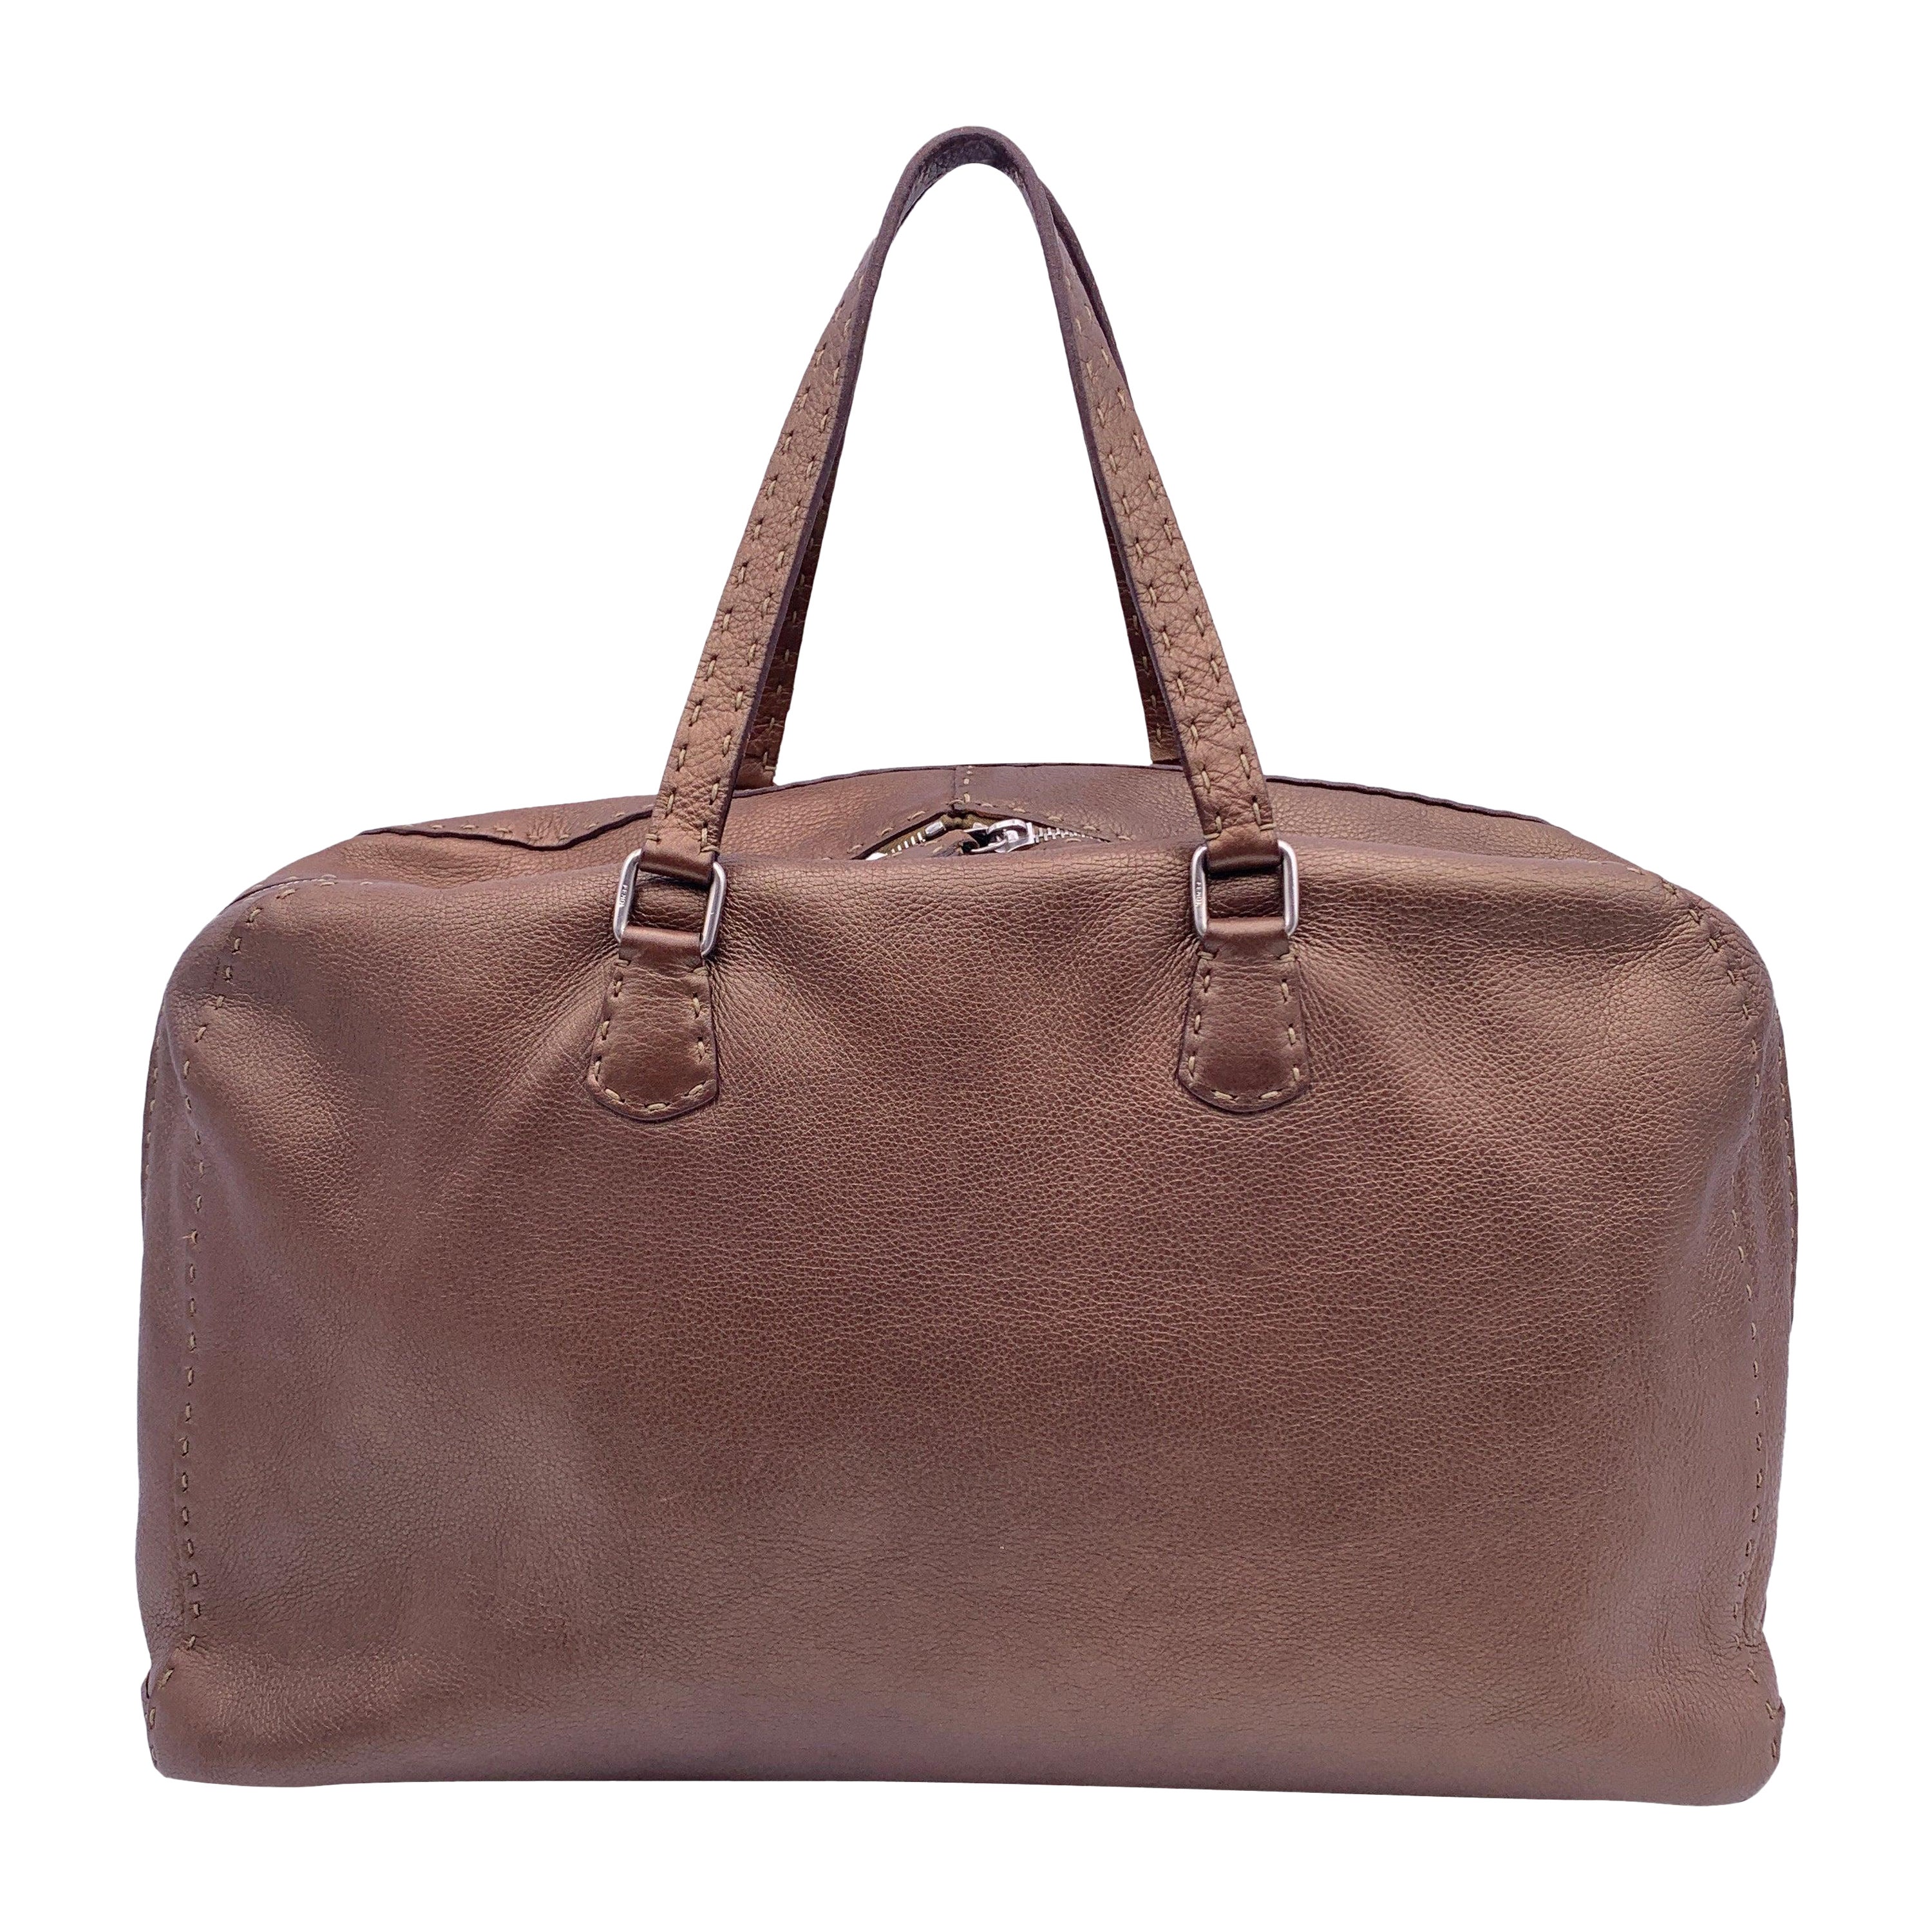 Fendi Selleria Brown Metallic Leather Weekender Bag Satchel For Sale